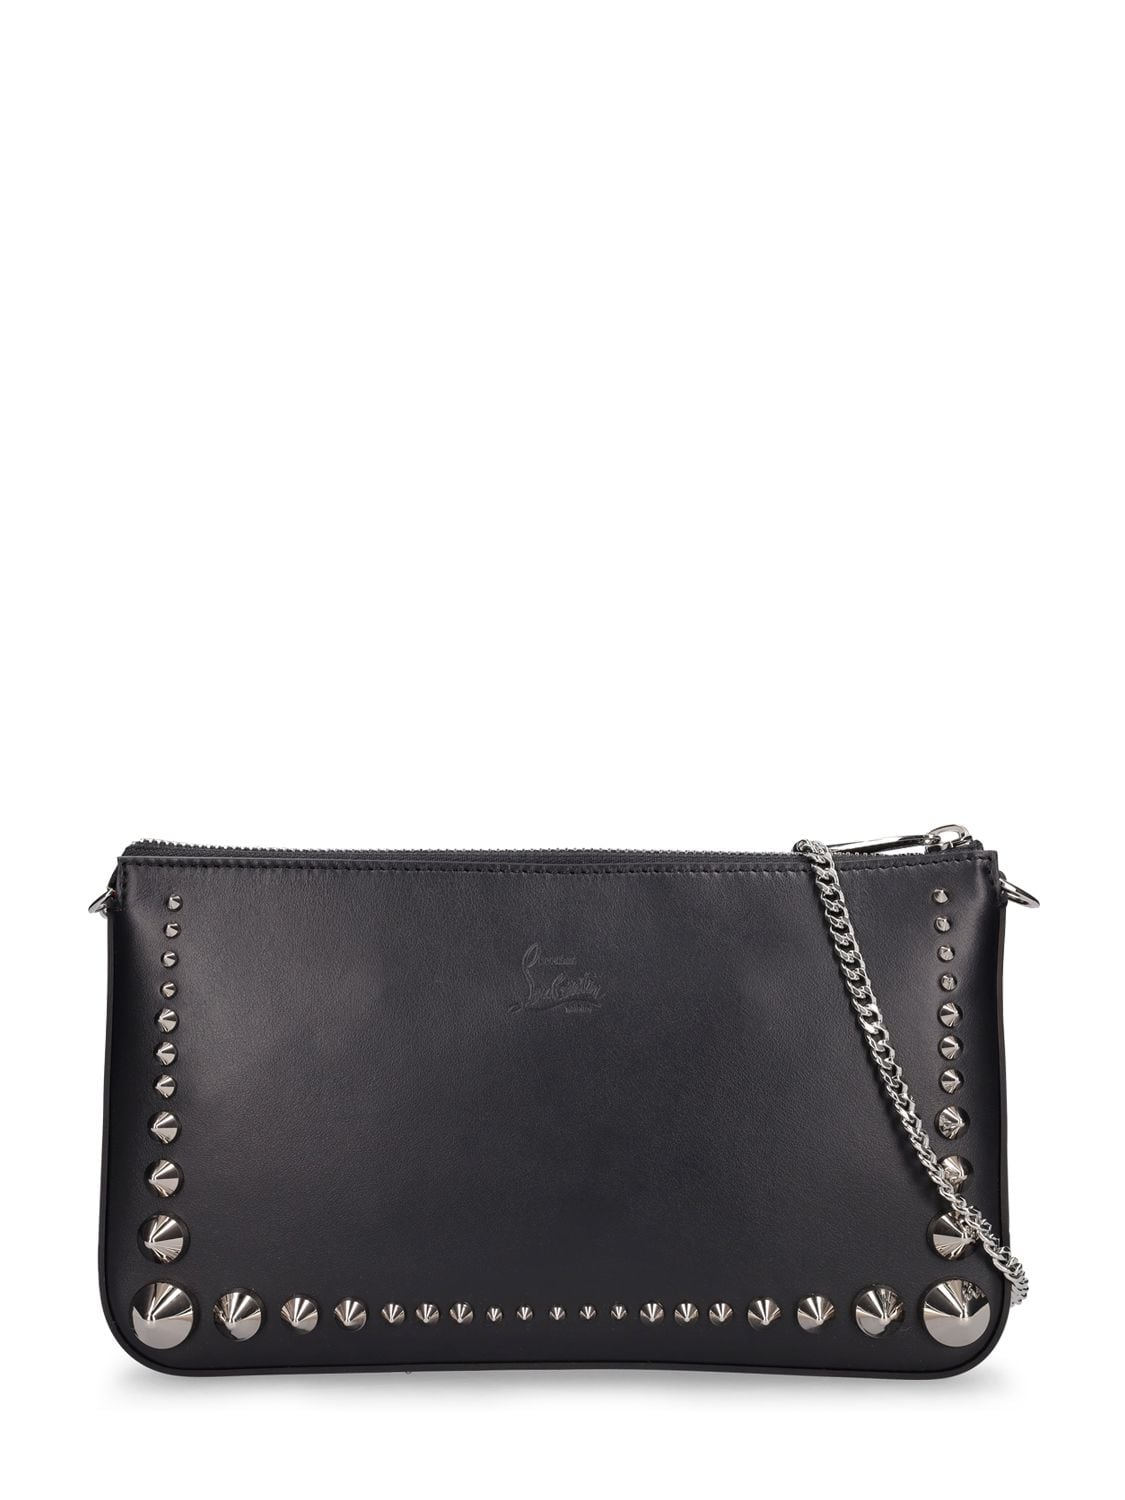 Christian Louboutin Mini Loubila Paris Leather Bag In Black,black,sil